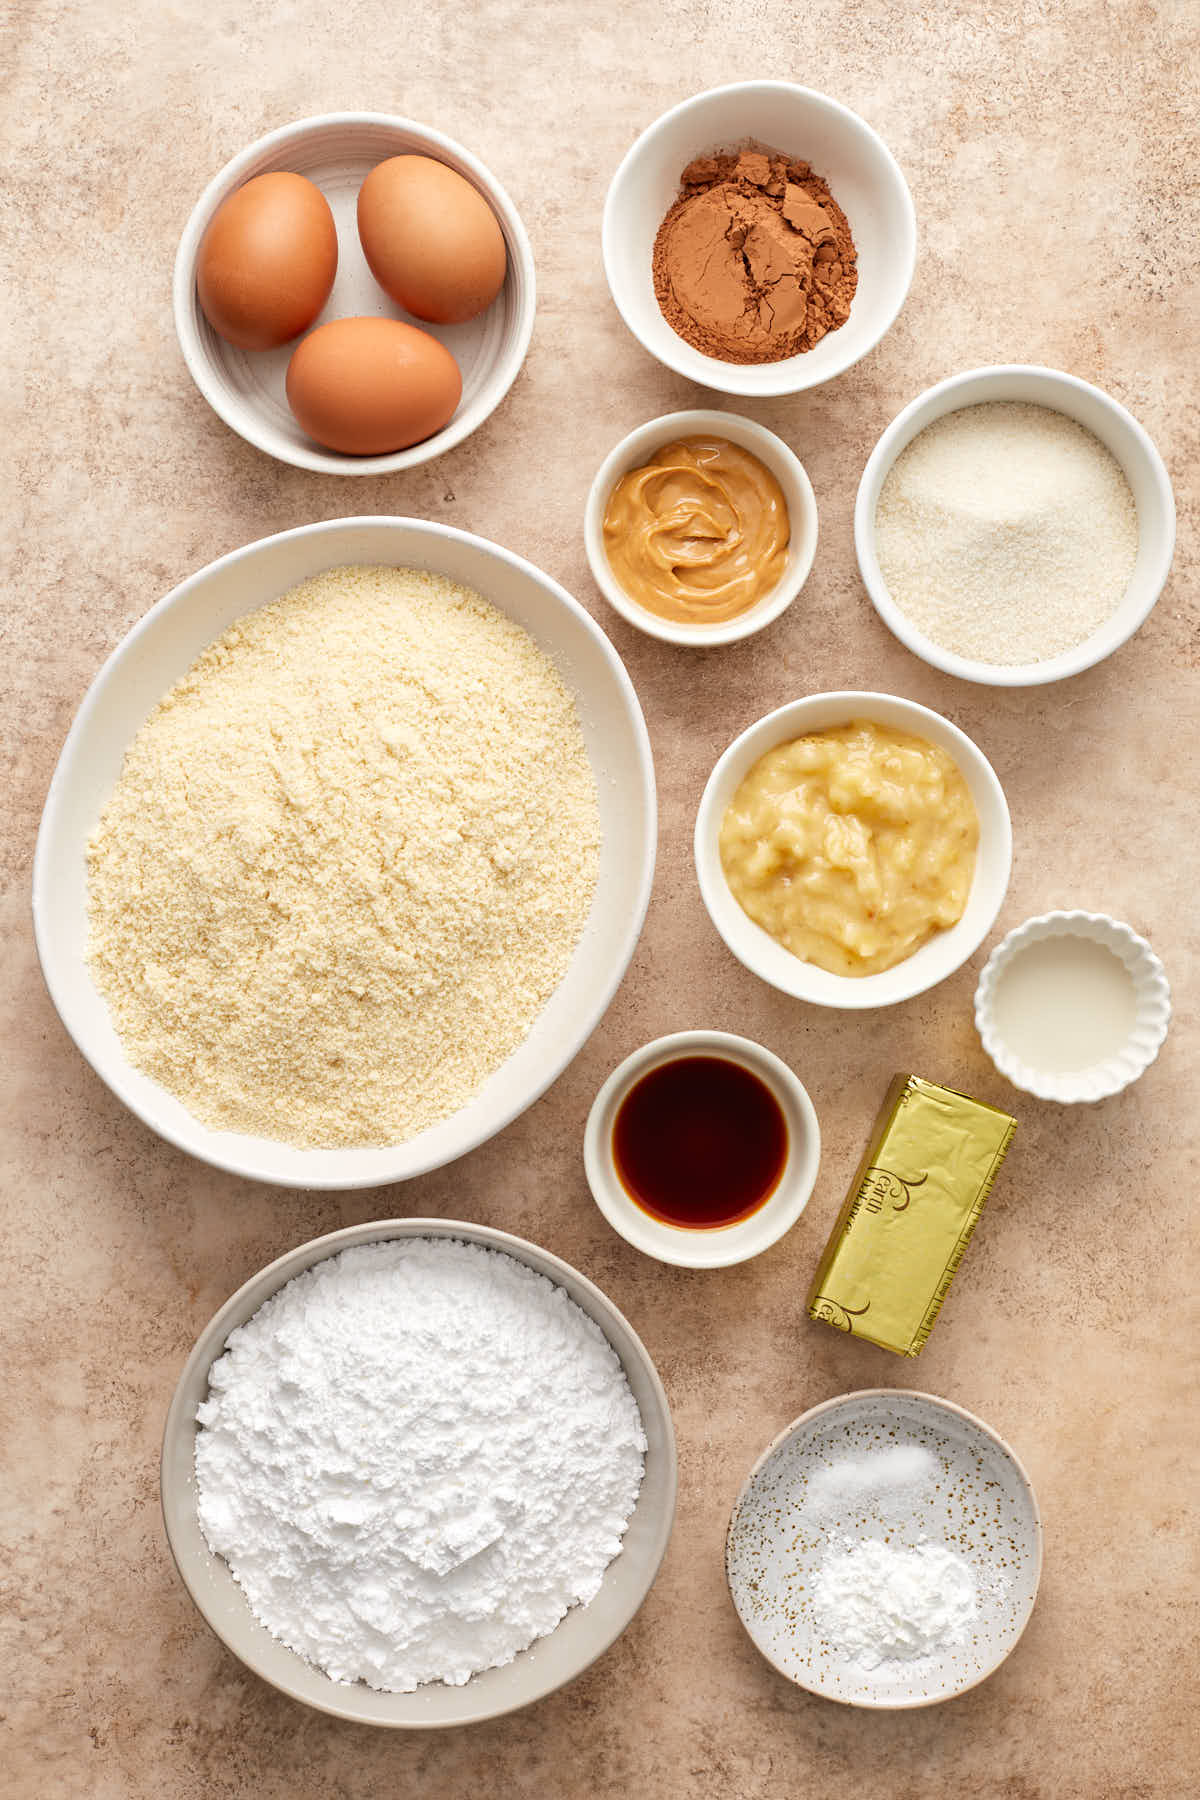 Ingredients to make almond flour banana cake arranged in individual bowls.